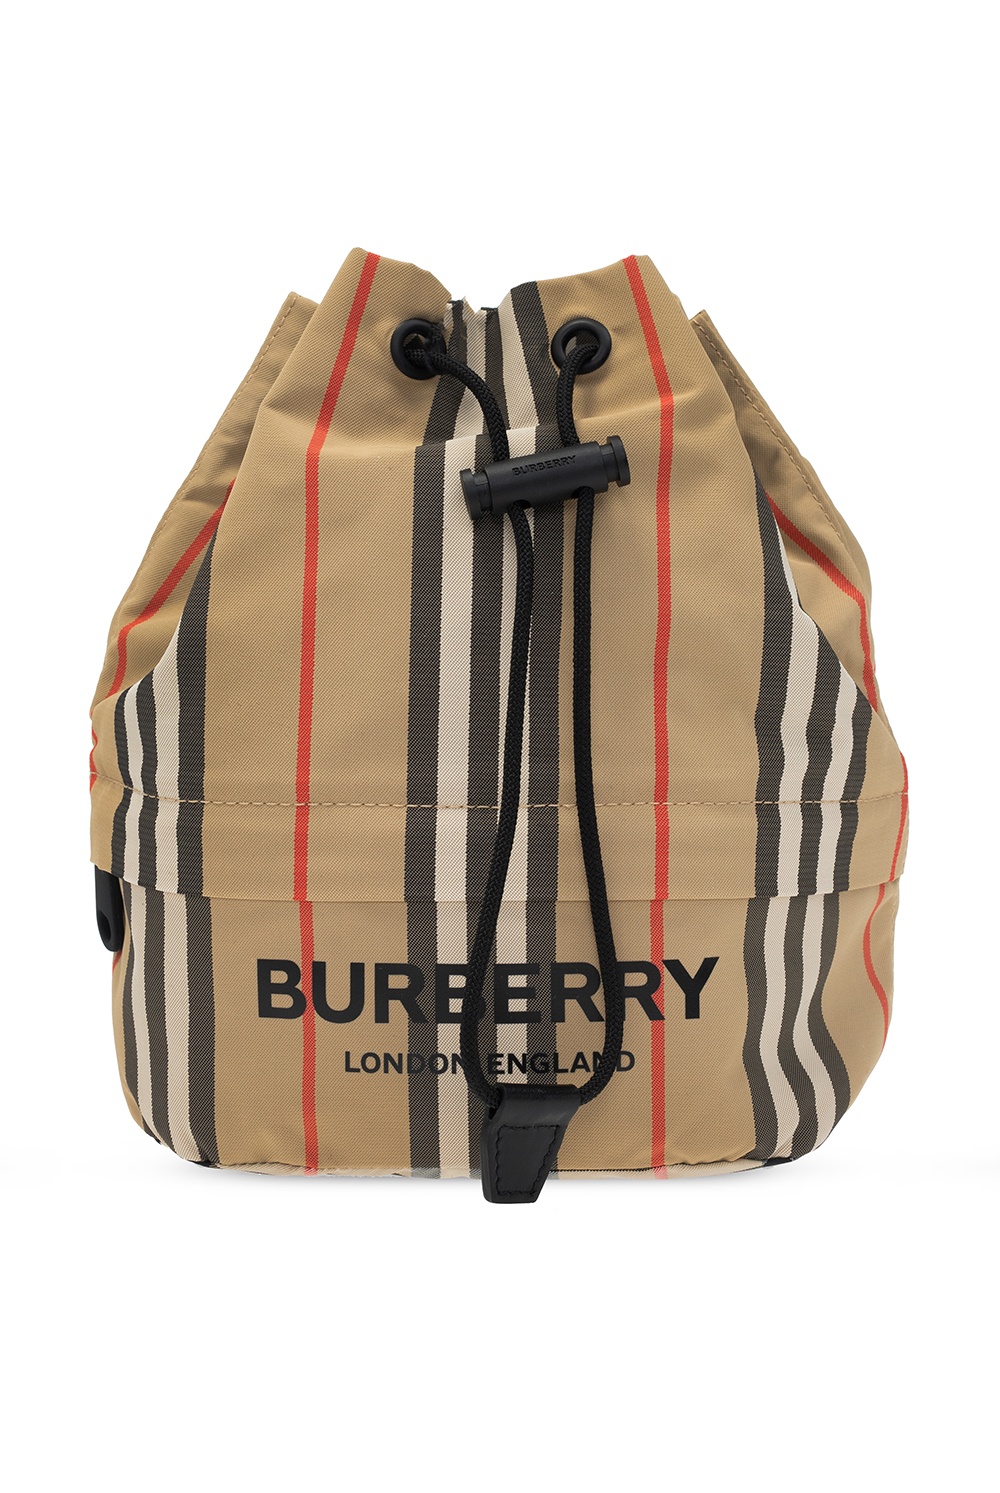 Burberry Striped handbag